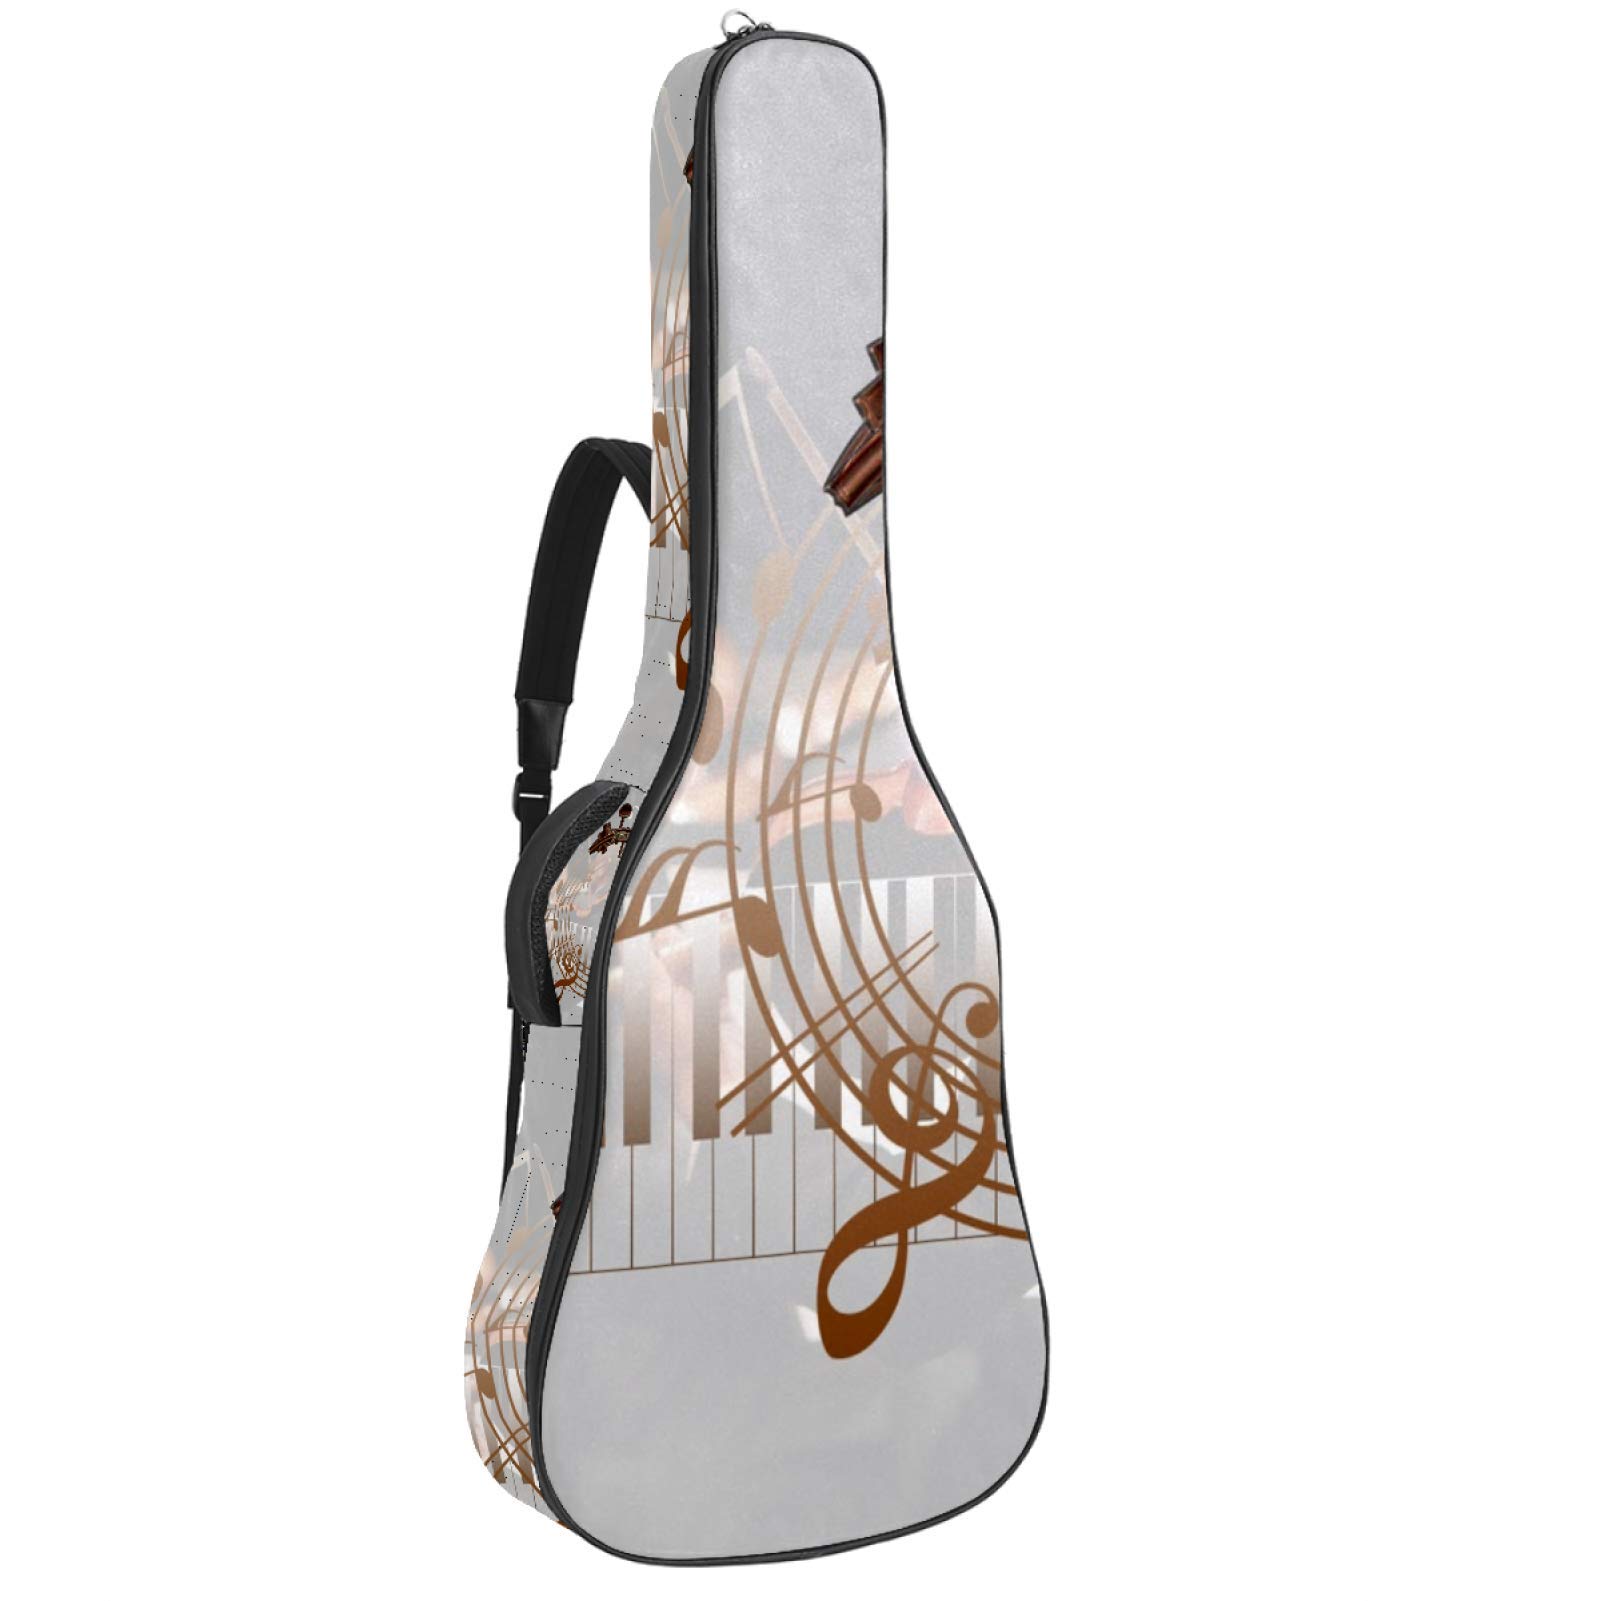 Gitarren-Gigbag, wasserdicht, Reißverschluss, weich, für Bassgitarre, Akustik- und klassische Folk-Gitarre, Musiknotenblatt